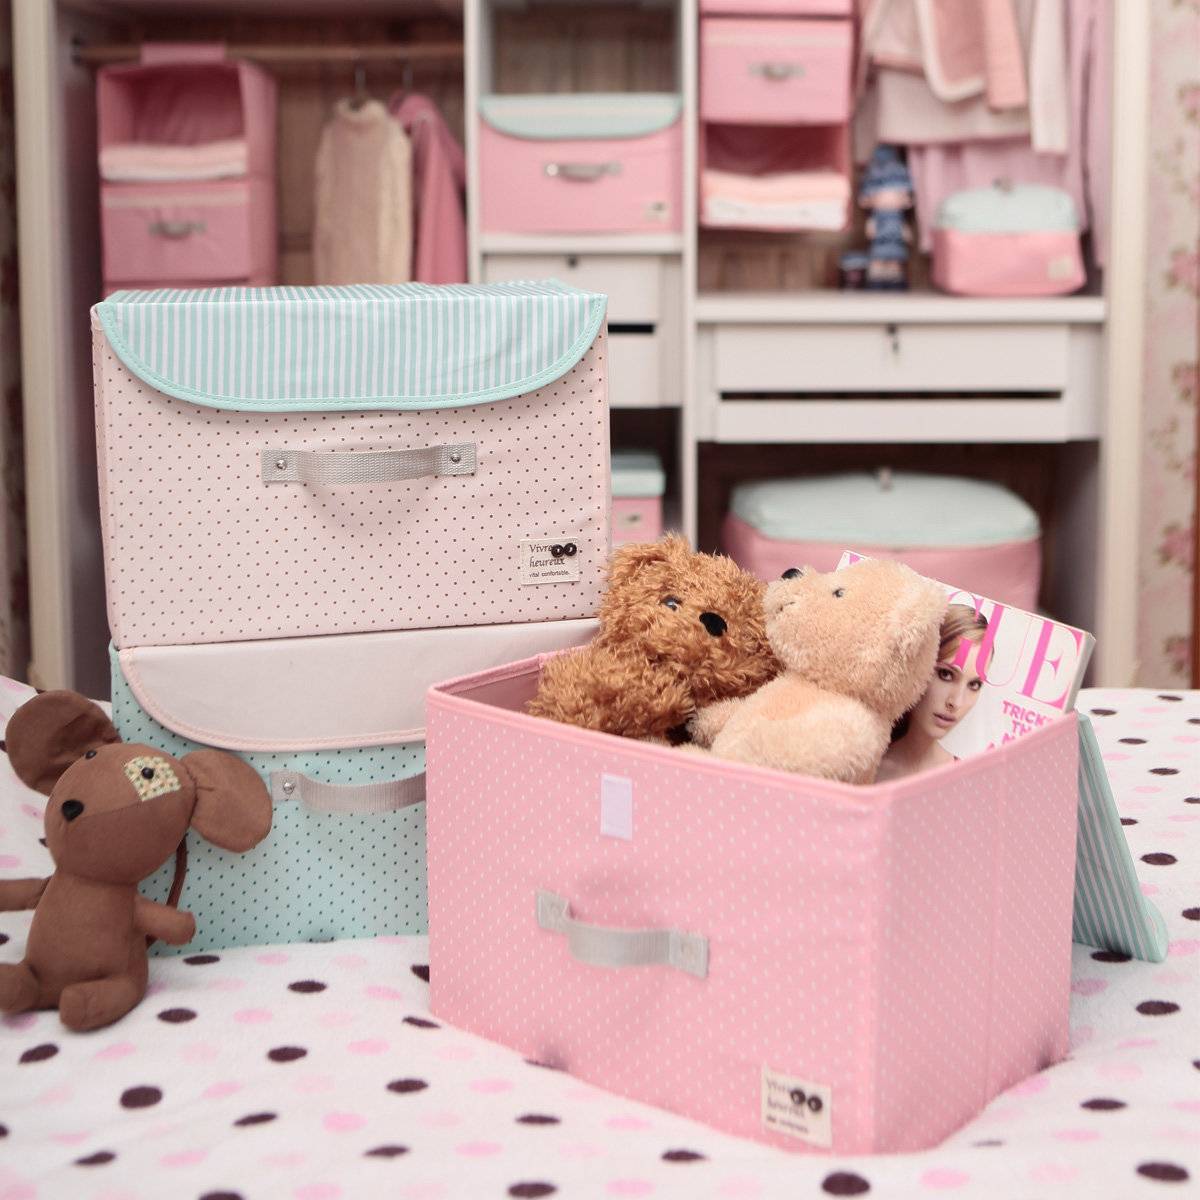 Хранение игрушек в детской комнате: различные способы удобной и безопасной организации пространства